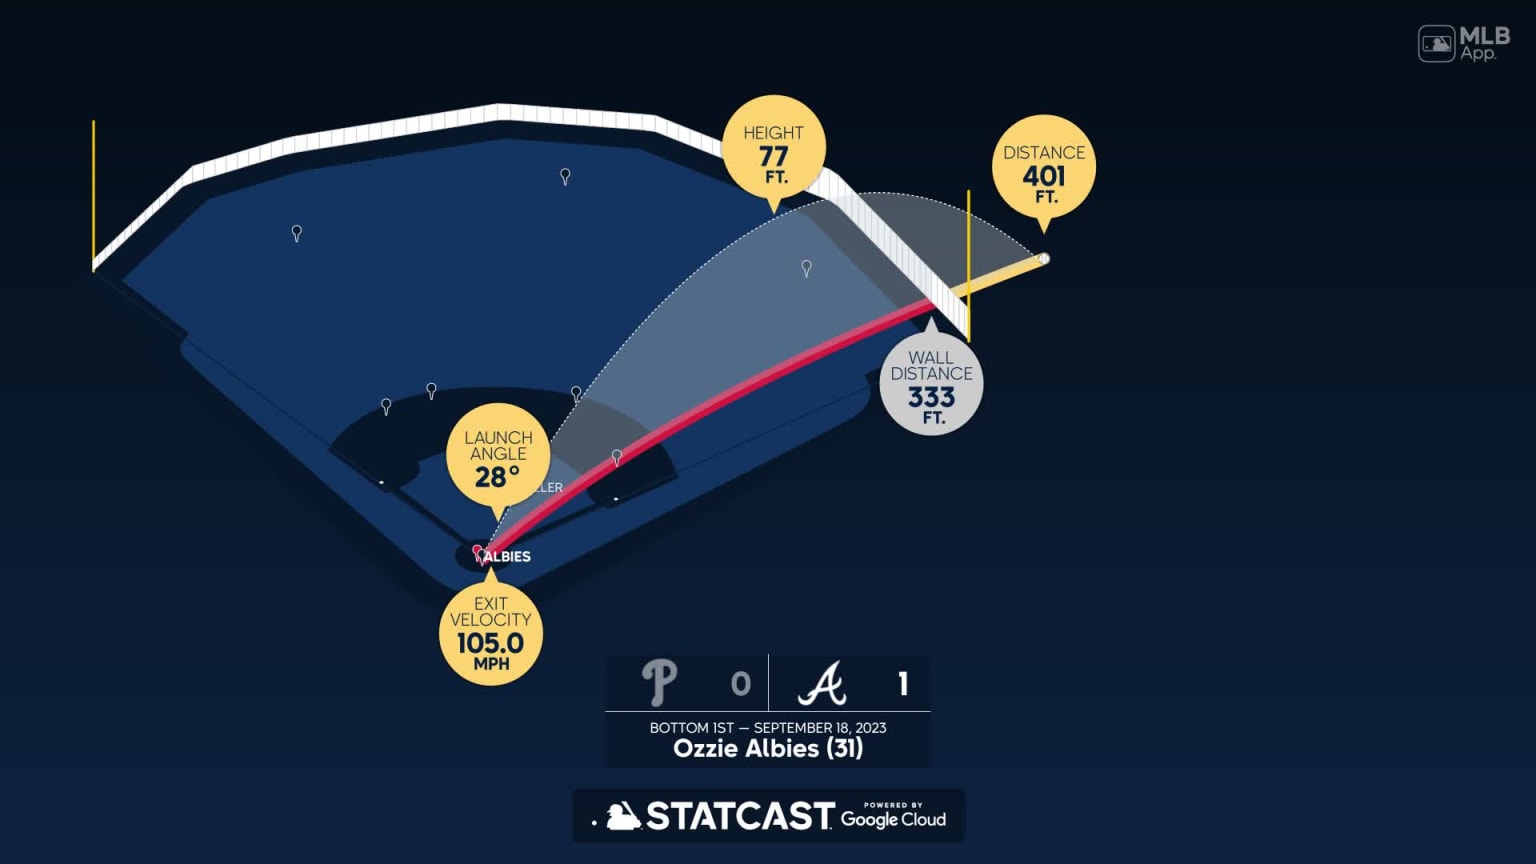 Ozzie Albies' two-run home run, 09/21/2021